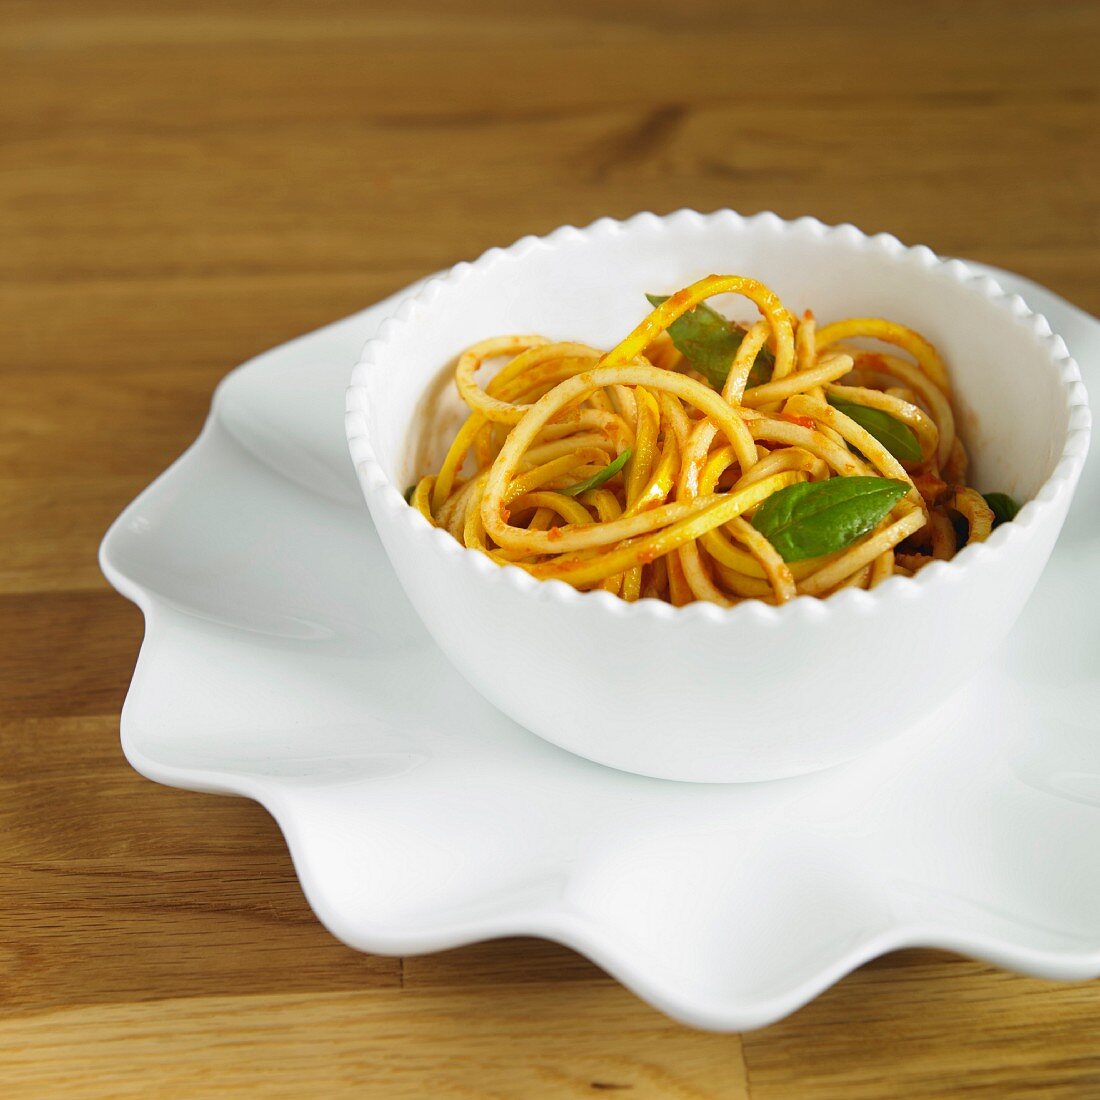 Gelbe Zucchinisppaghetti mit Tomatensauce und Basilikum in weisser Schale